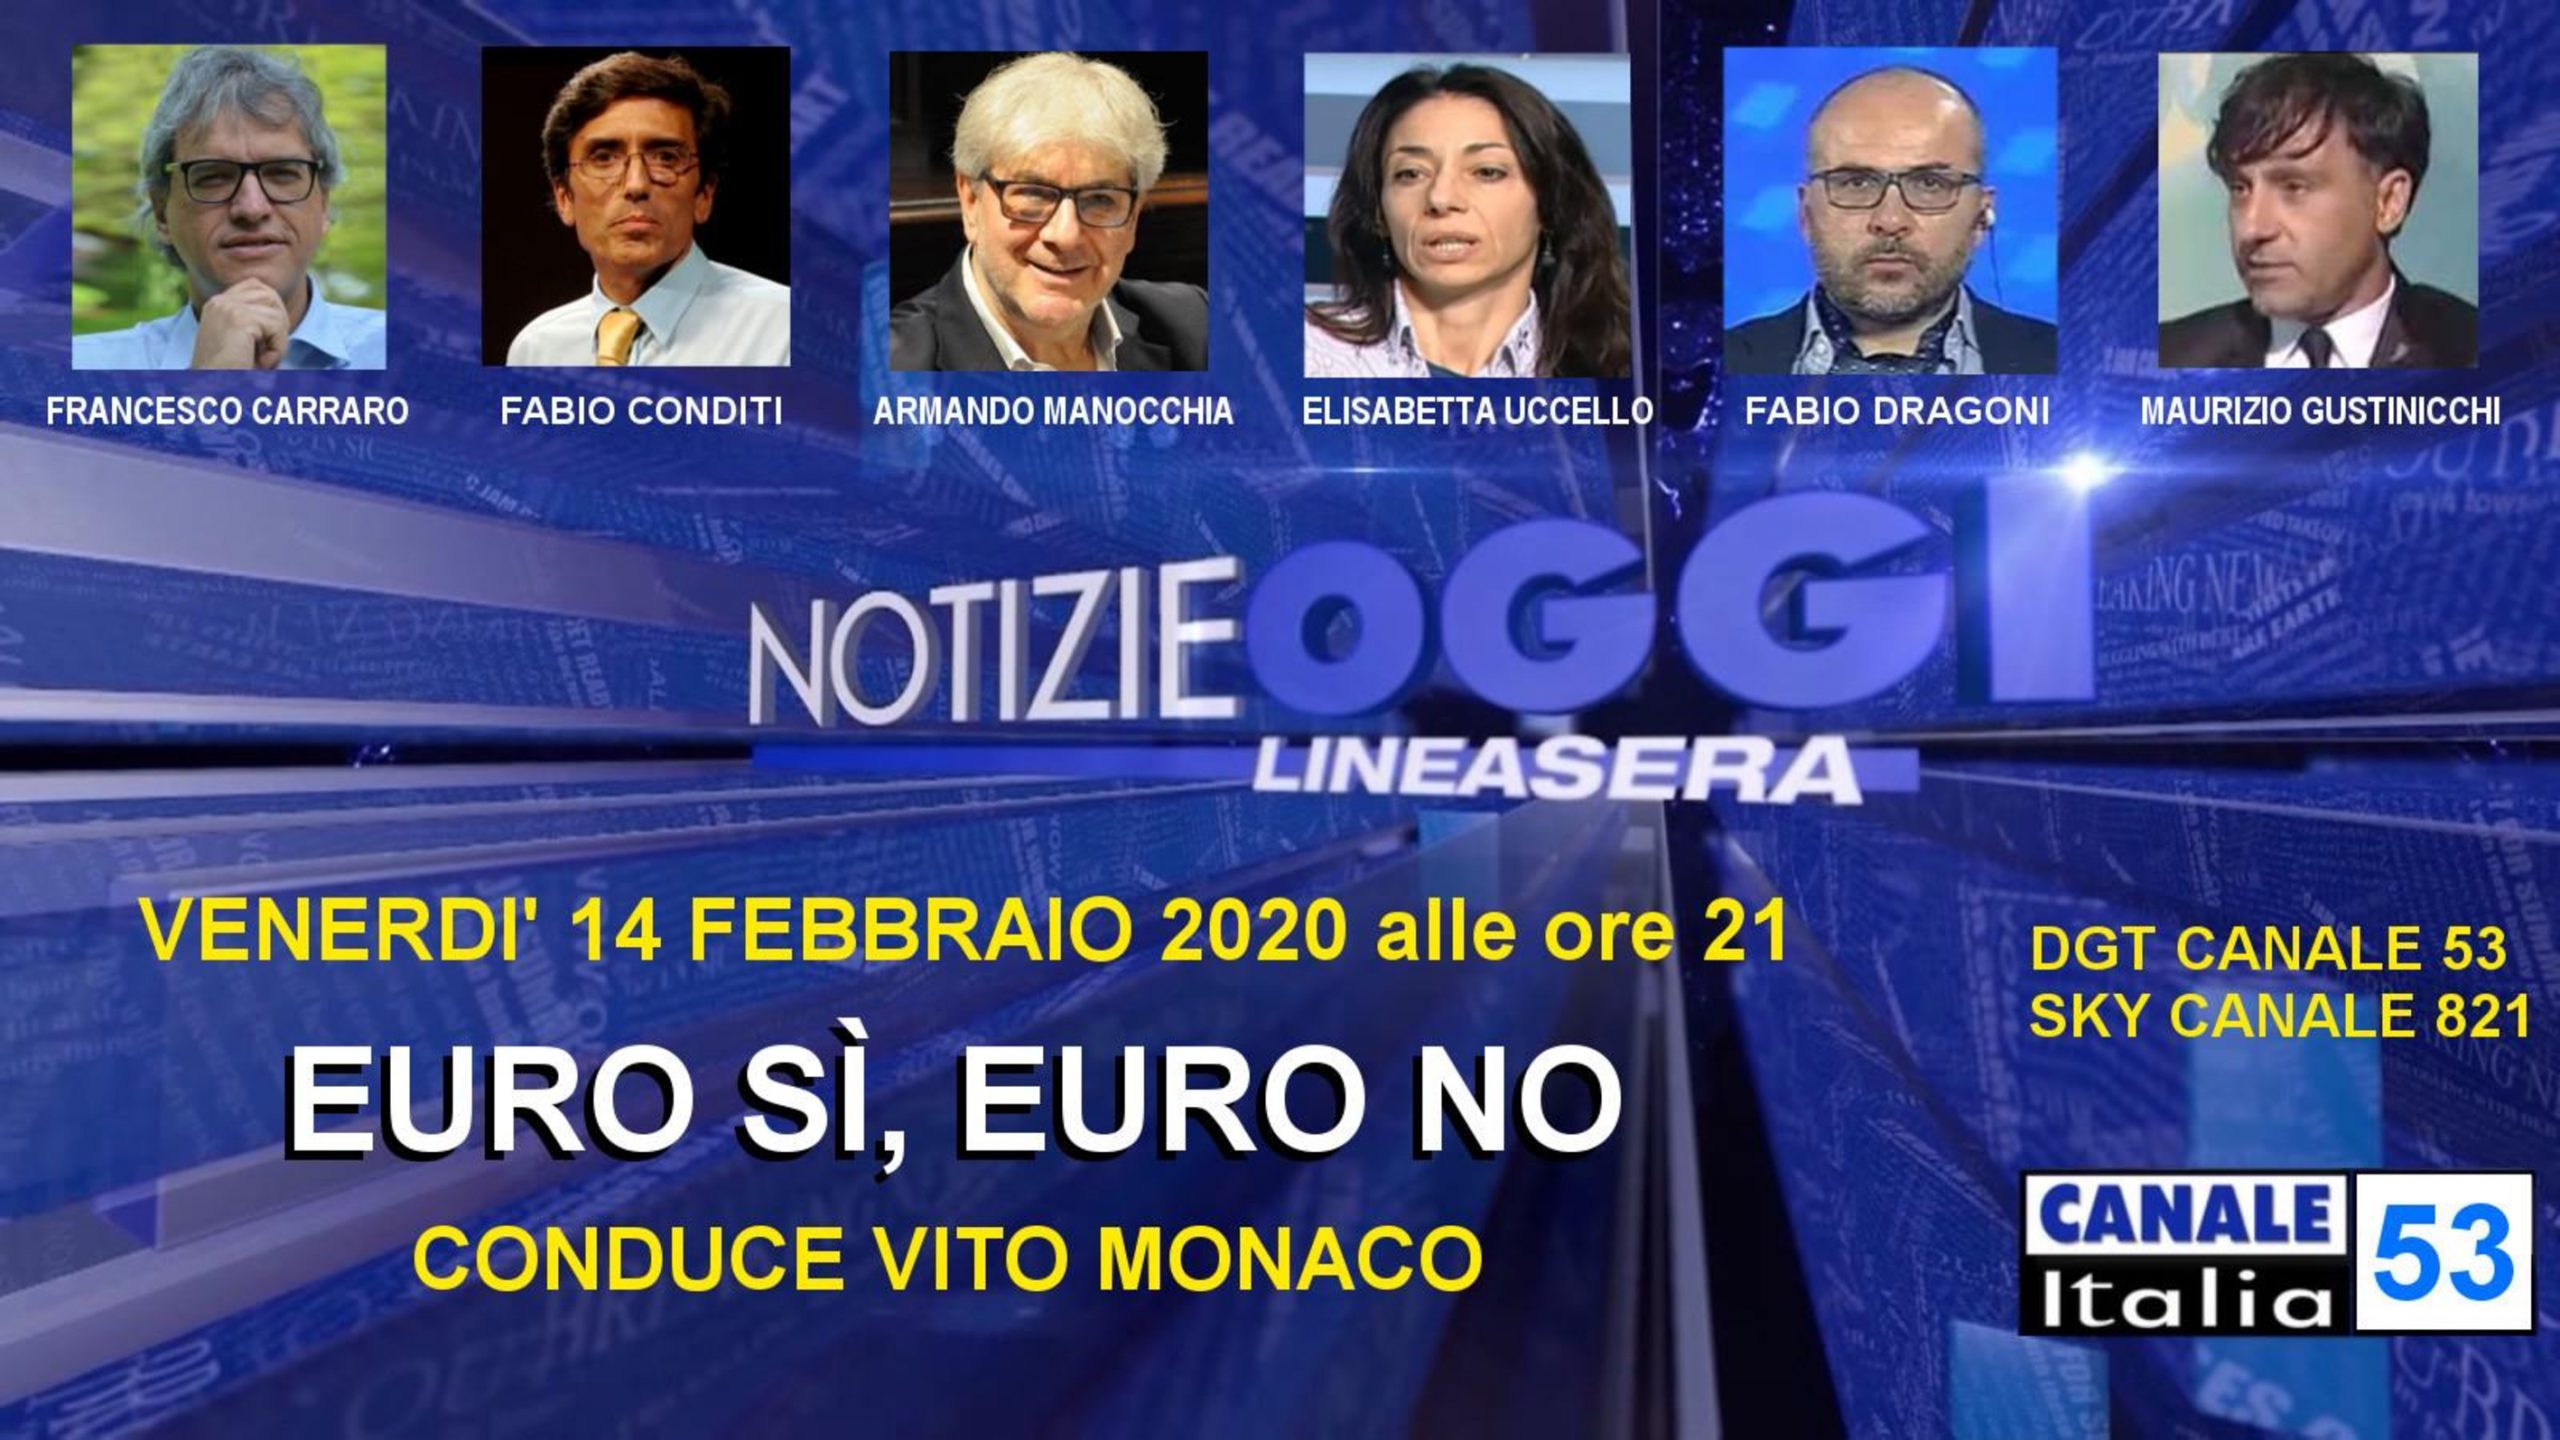 Canale Italia 53 Notizie Oggi Linea Sera 14 febbraio 2020